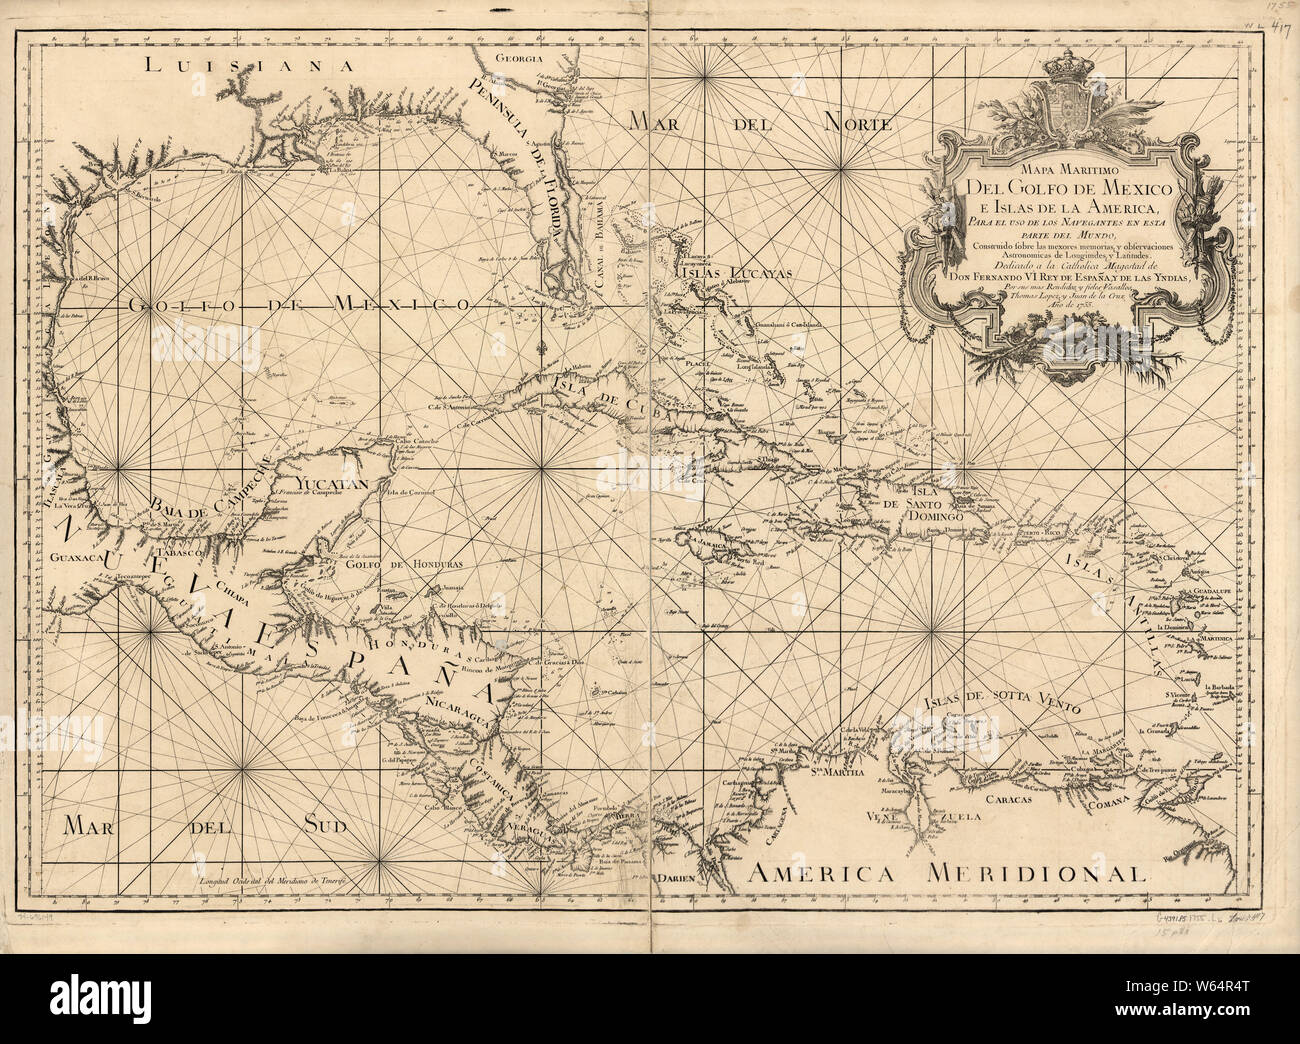 American Revolutionary War Era Maps 1750-1786 613 Mapa maritimo del Golfo de Mexico e islas de la America para el uso de los navegantes en esta parte del Rebuild and Repair Stock Photo